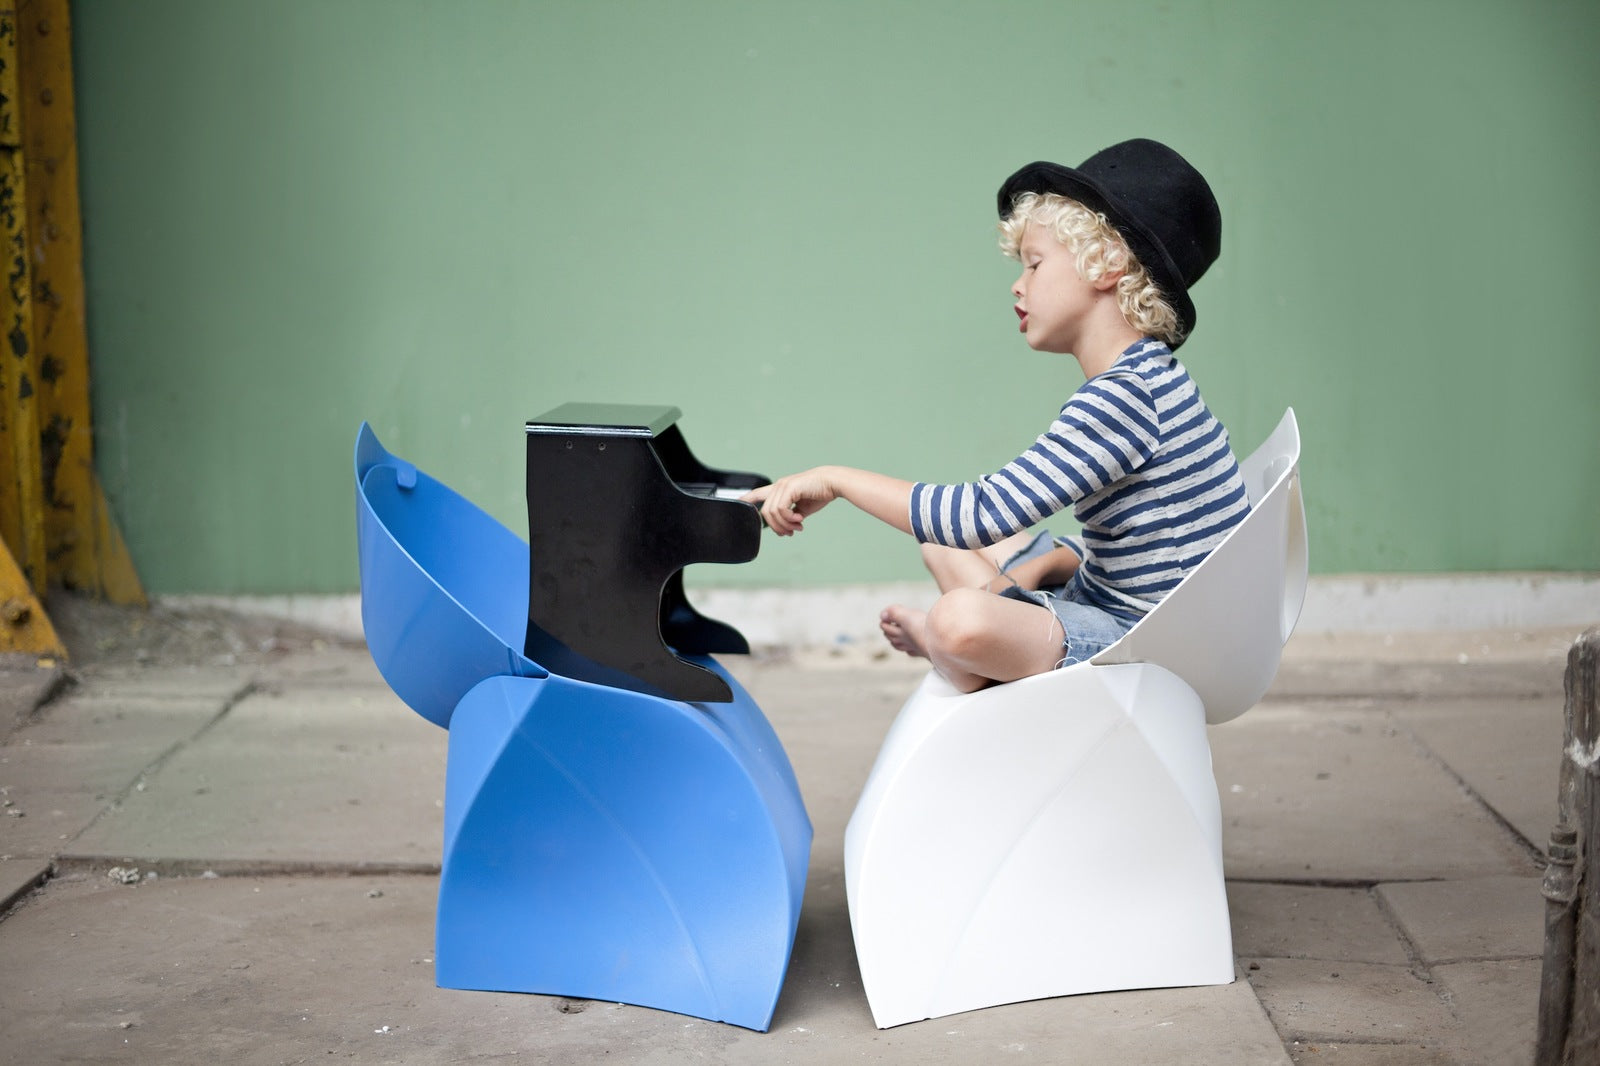 Flux Chair Junior opvouwbare design kinderstoel blauw (4 stuks)